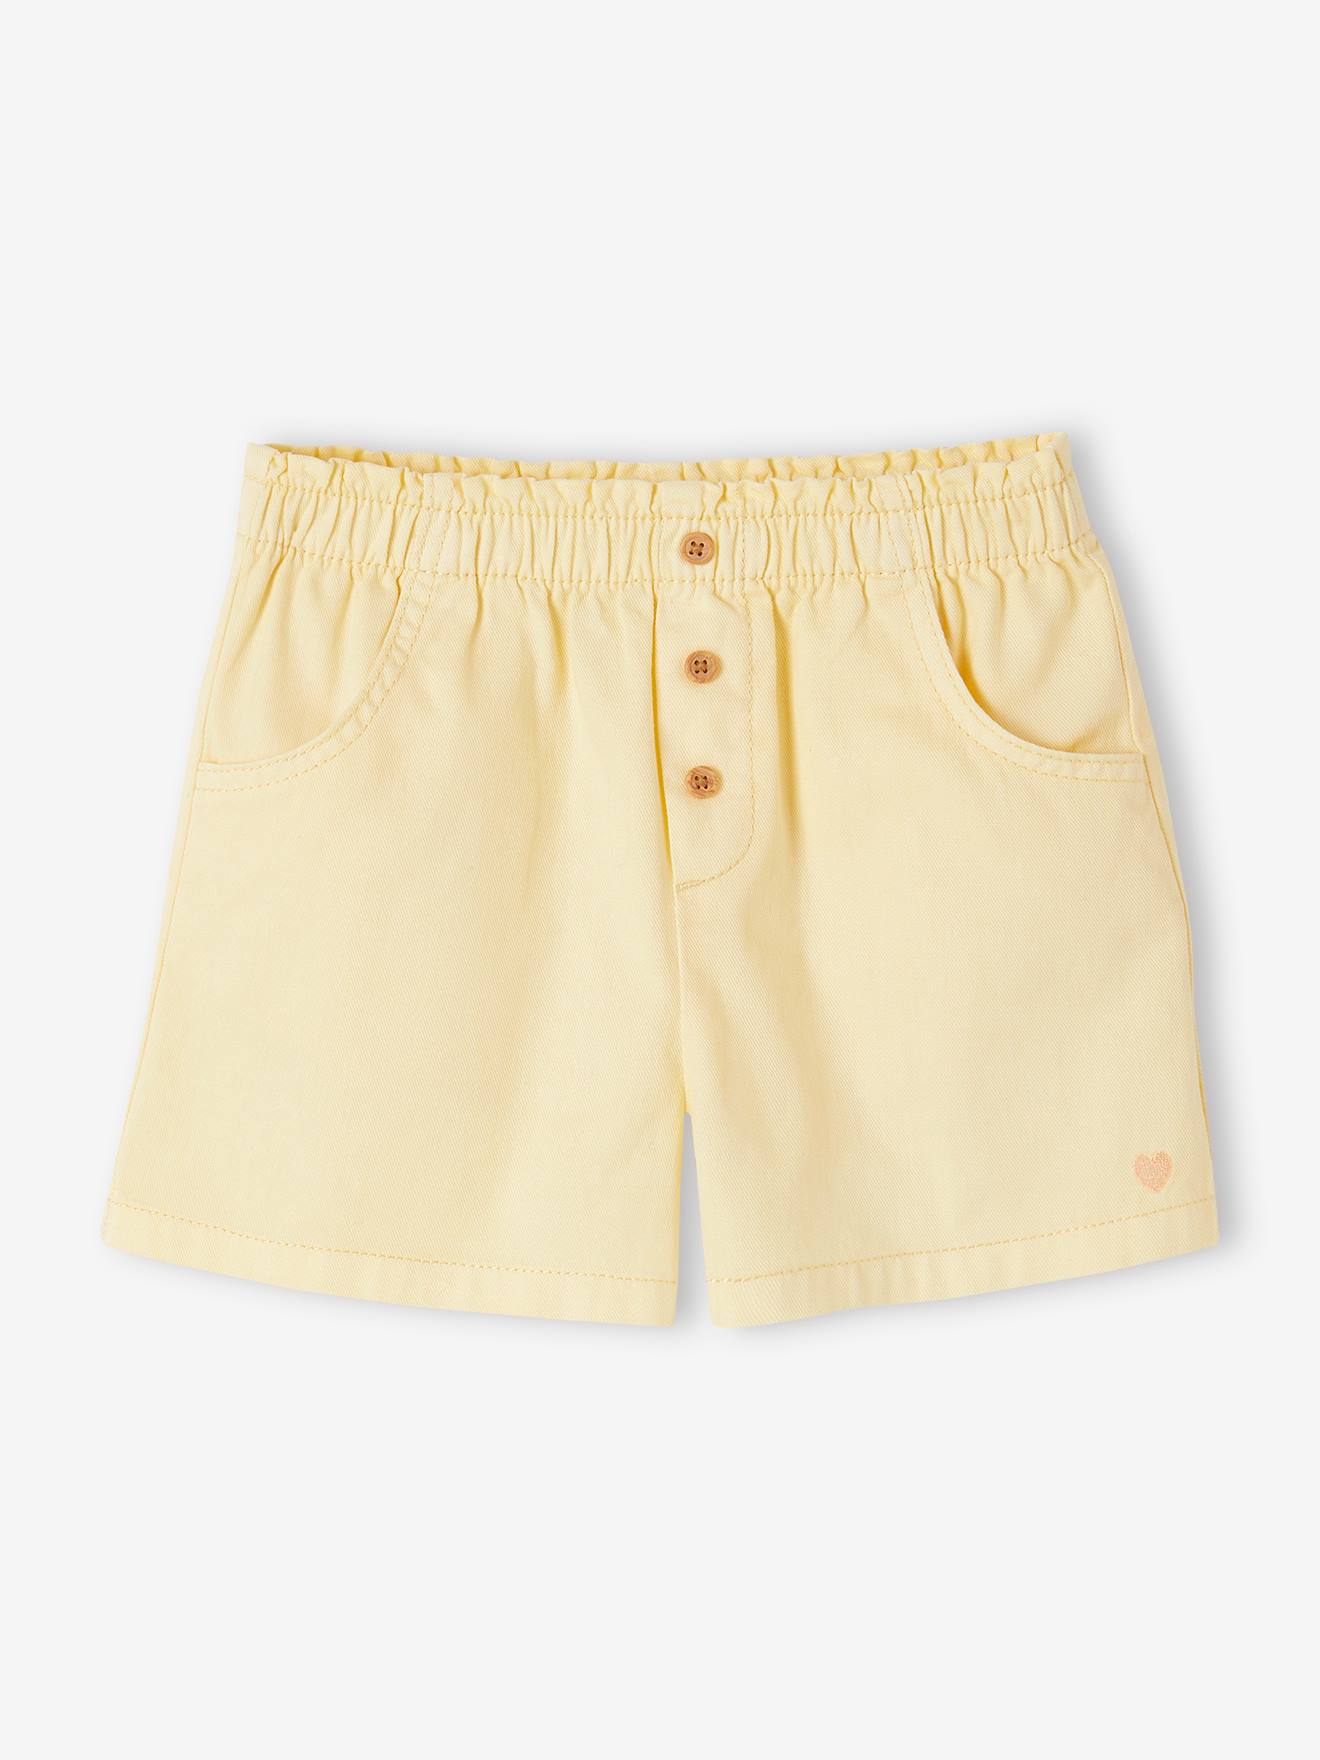 VERTBAUDET Short de color fácil de vestir para niña amarillo pastel